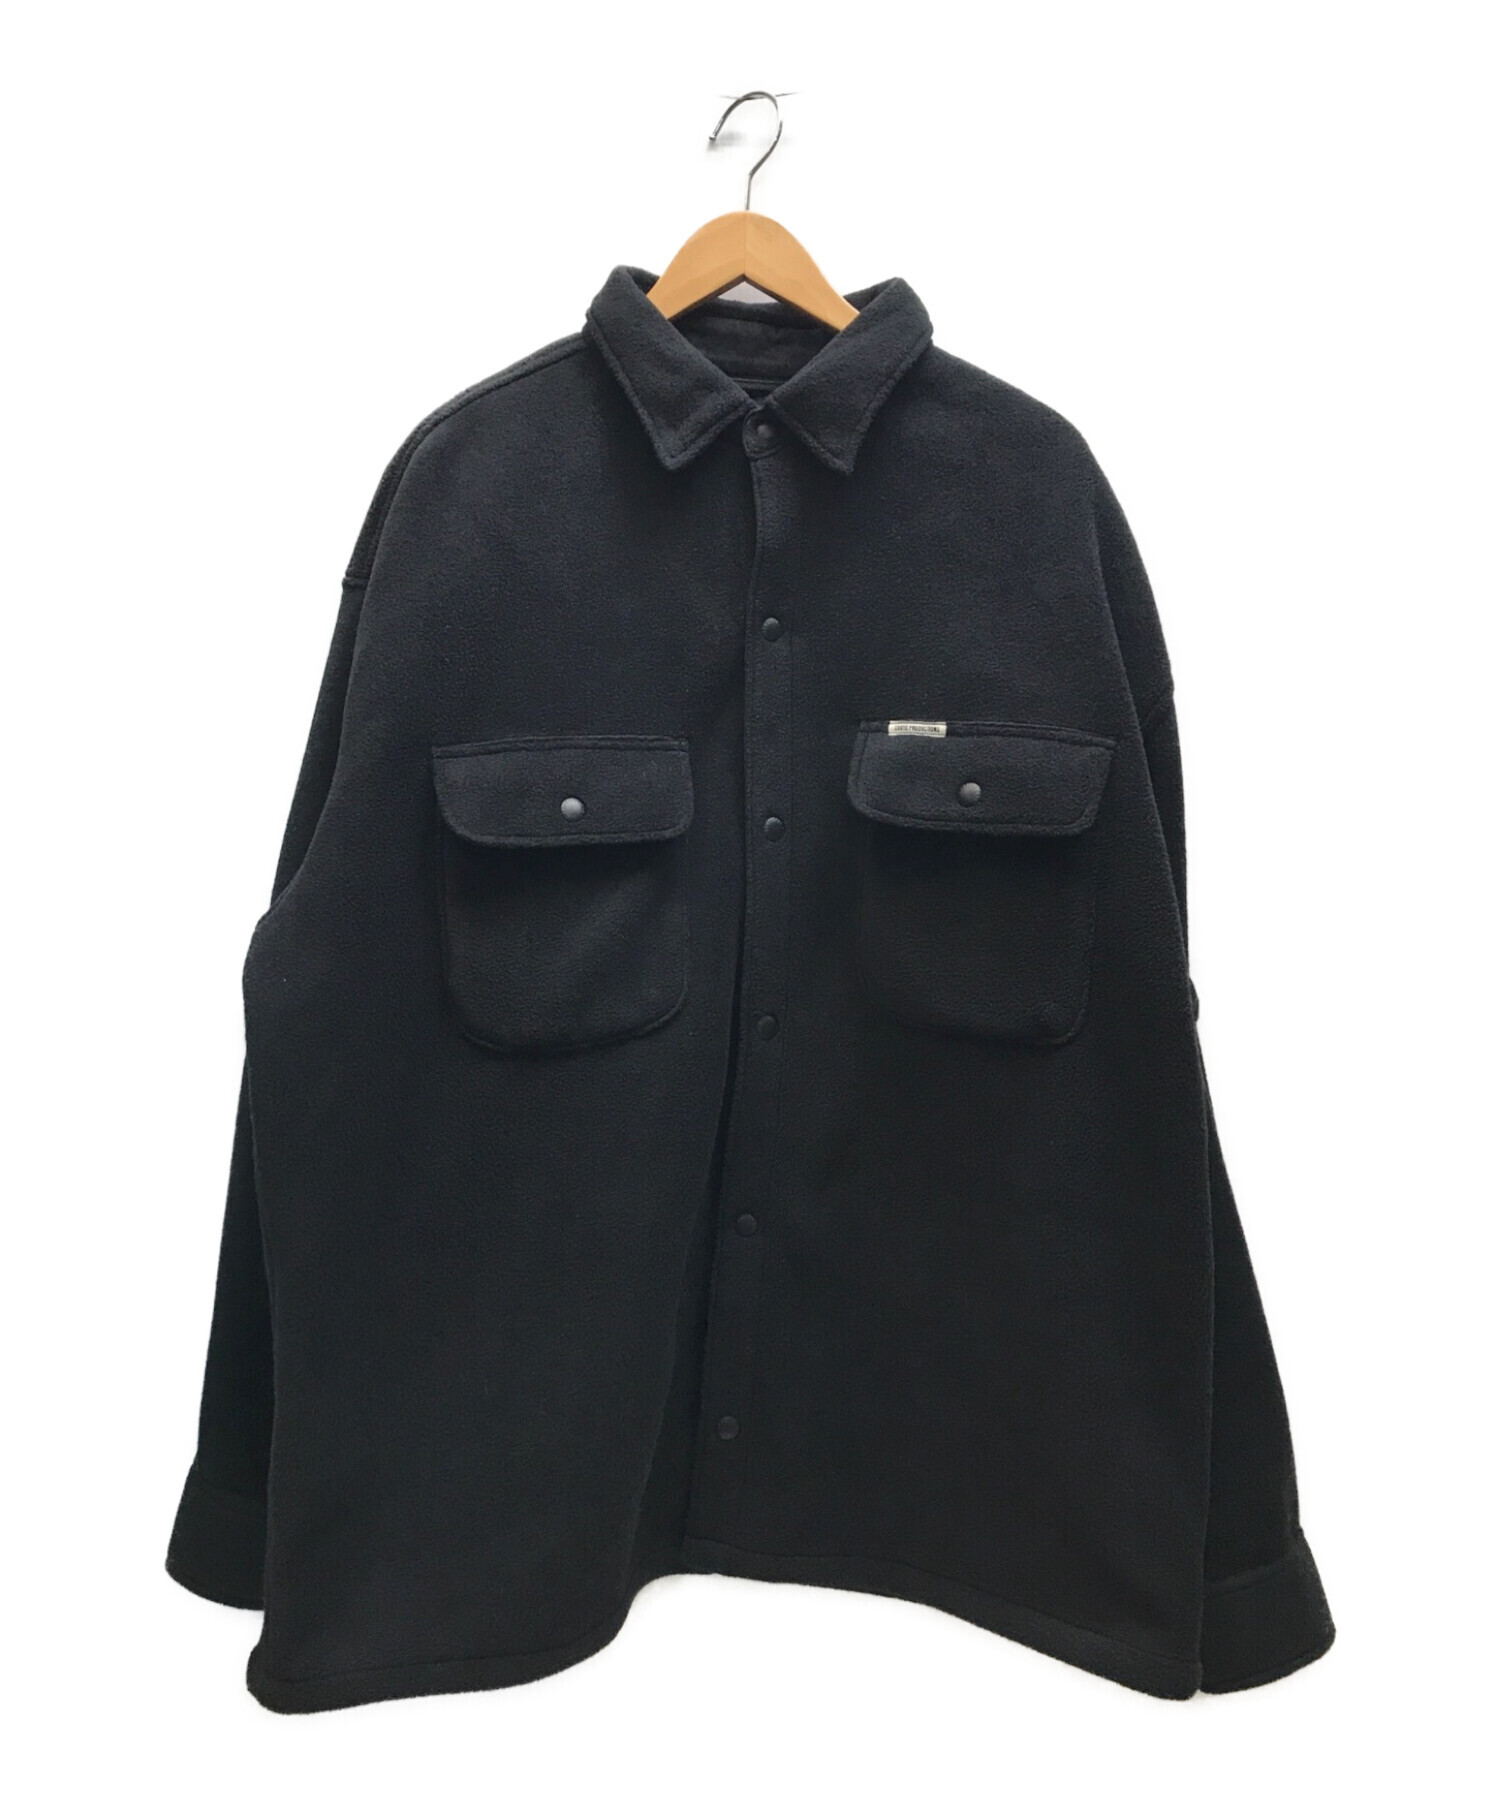 COOTIE PRODUCTIONS (クーティープロダクツ) 22SS Fleece CPO Jacket フリースCPOジャケット ブラック  サイズ:L